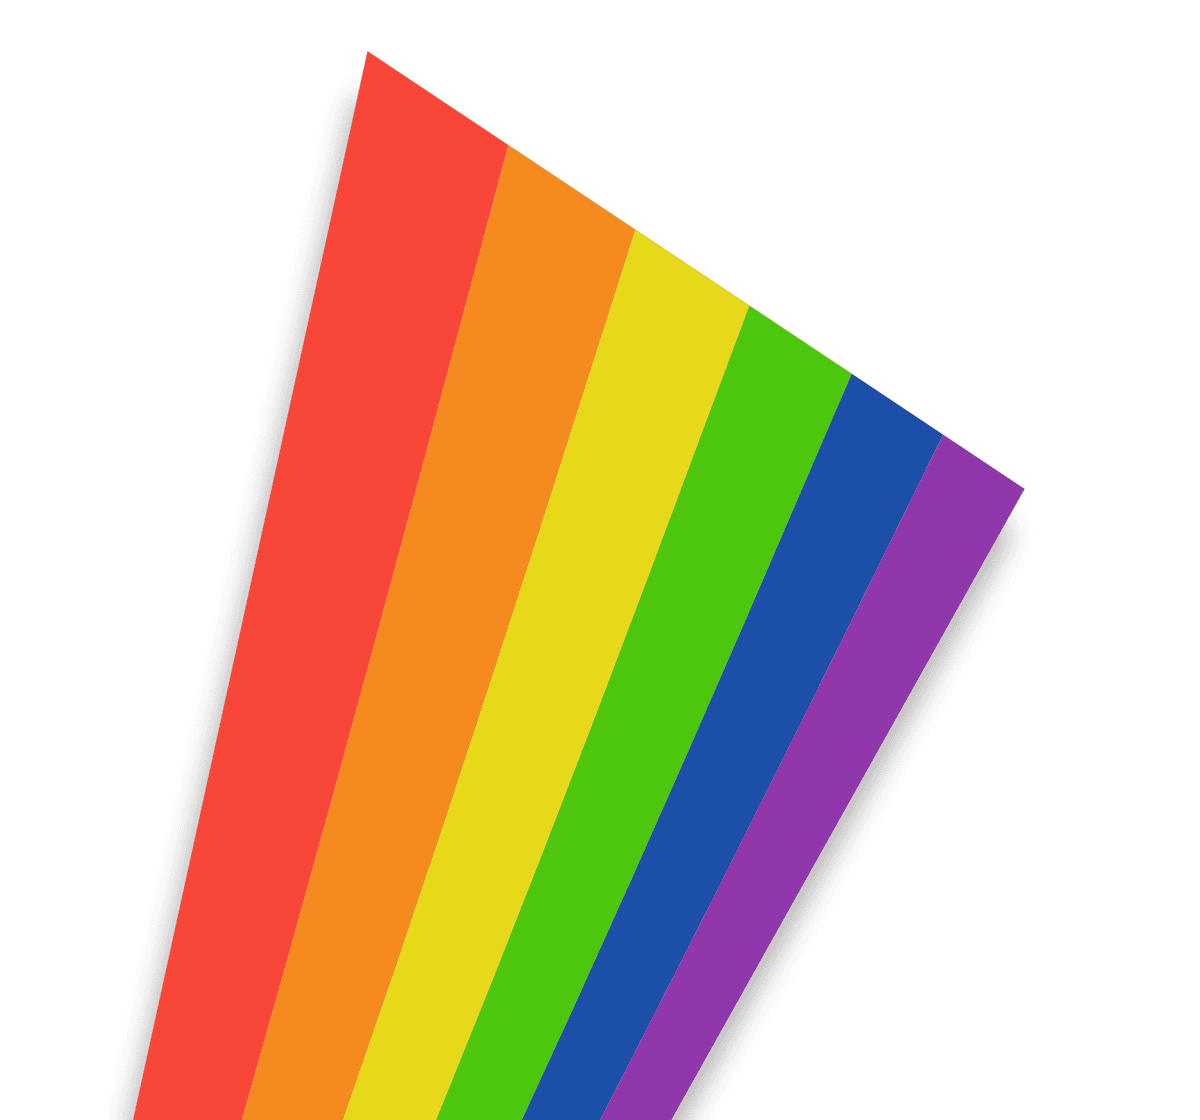 A 6-color bar that looks like a rainbow.